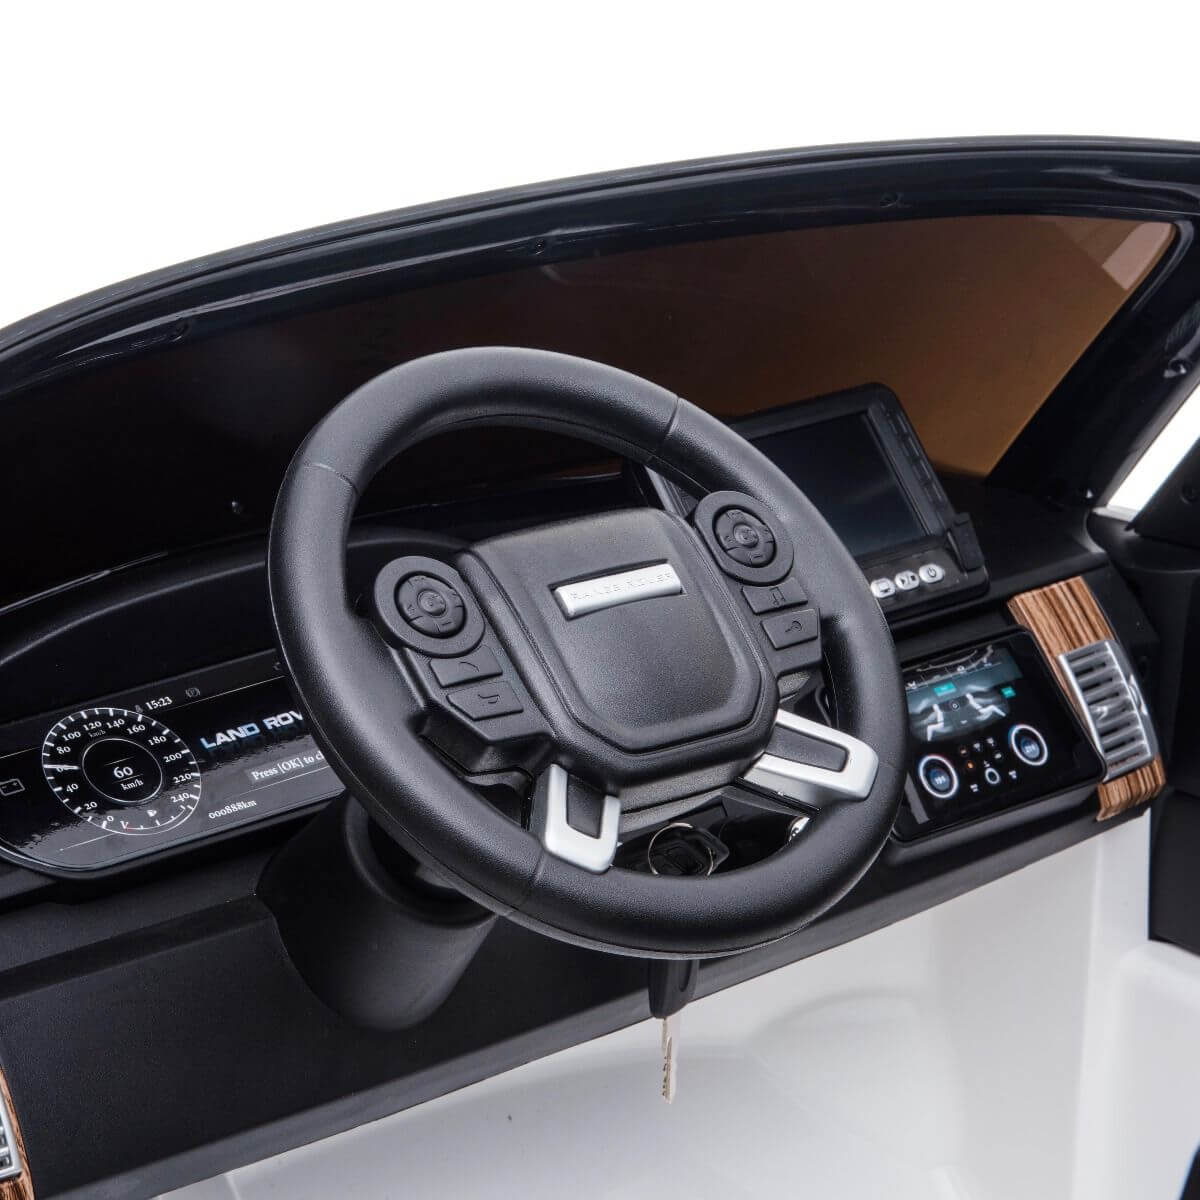 Steering Wheel of Range Rover